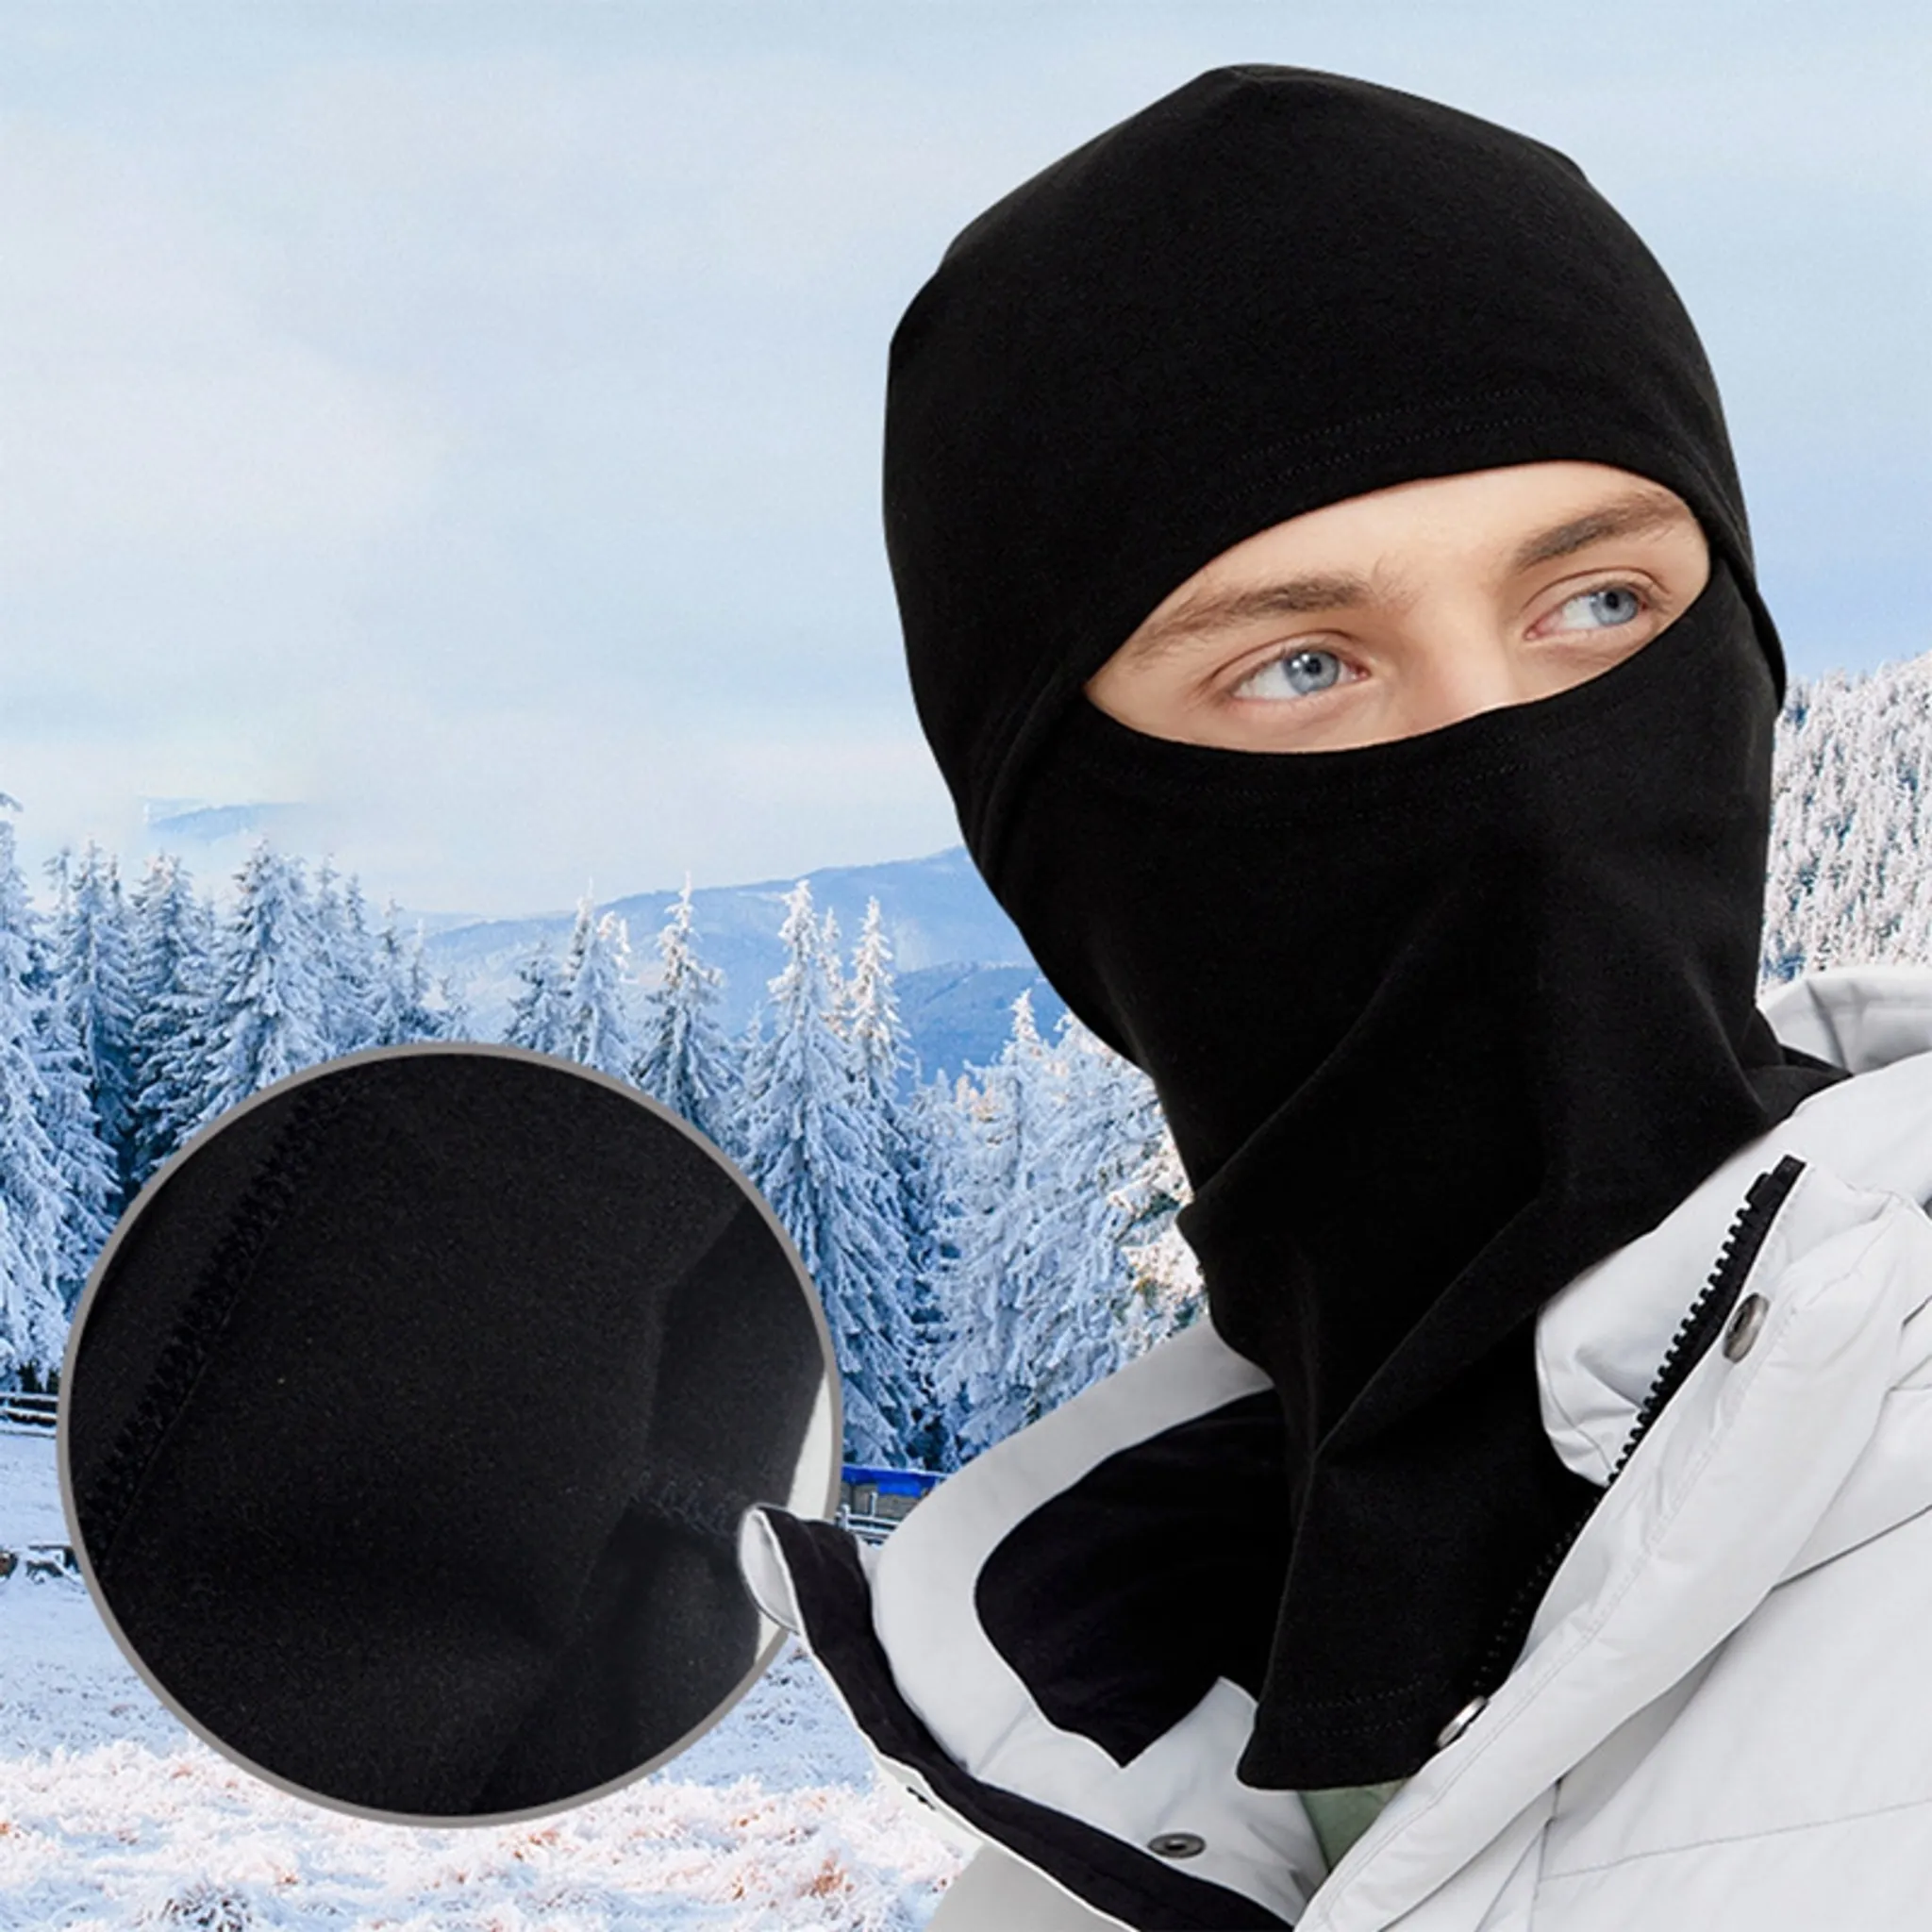 Balaclava Gesichtsmaske Winddicht Radfahren,Skifahren, Fahren Warm Gesichtshaube Motorrad für Sturmhaube Maske Ski